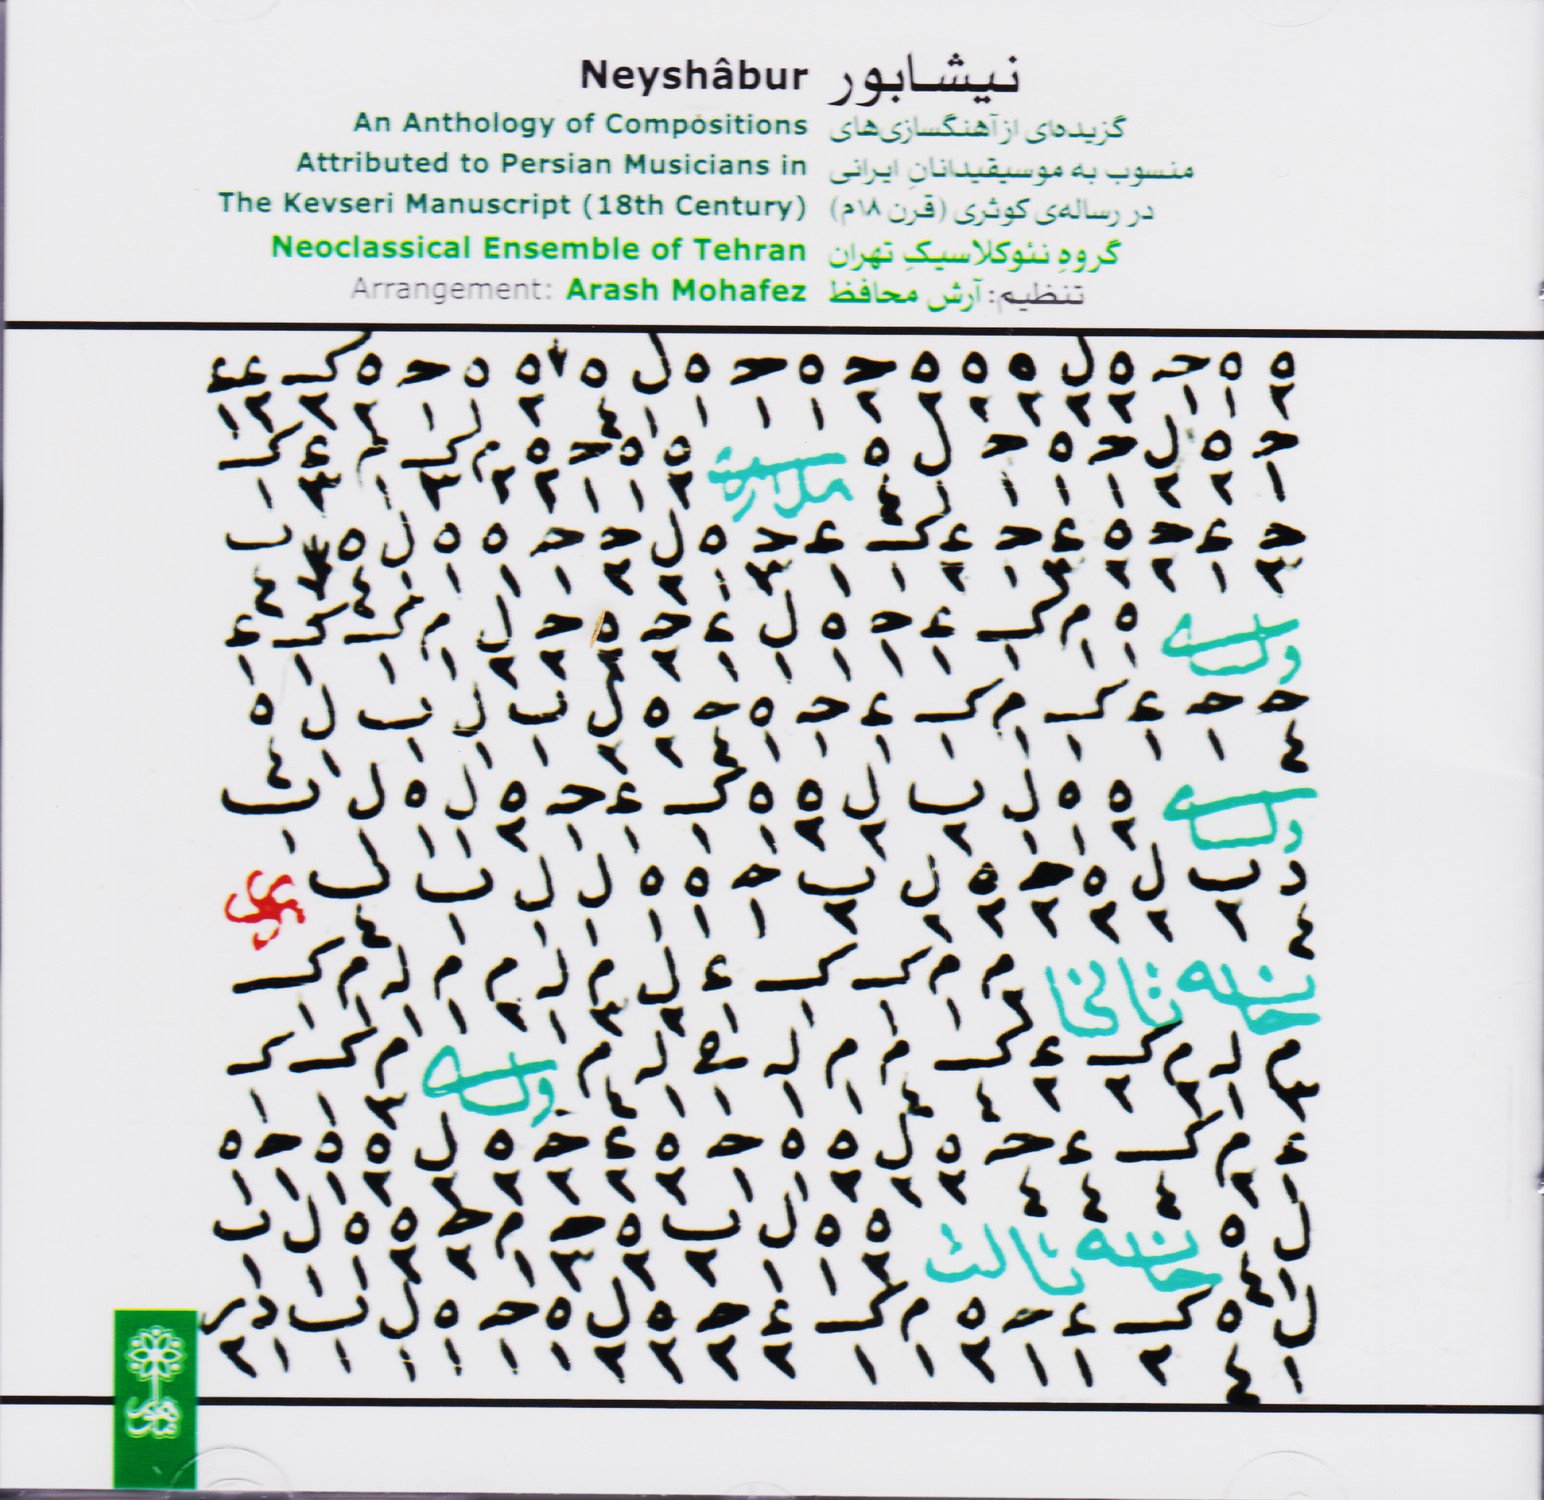 نیشابور : گزیده ای از آهنگسازی های منسوب به موسیقیدانان ایرانی در رساله ی کوثری ( قرن 18 م )